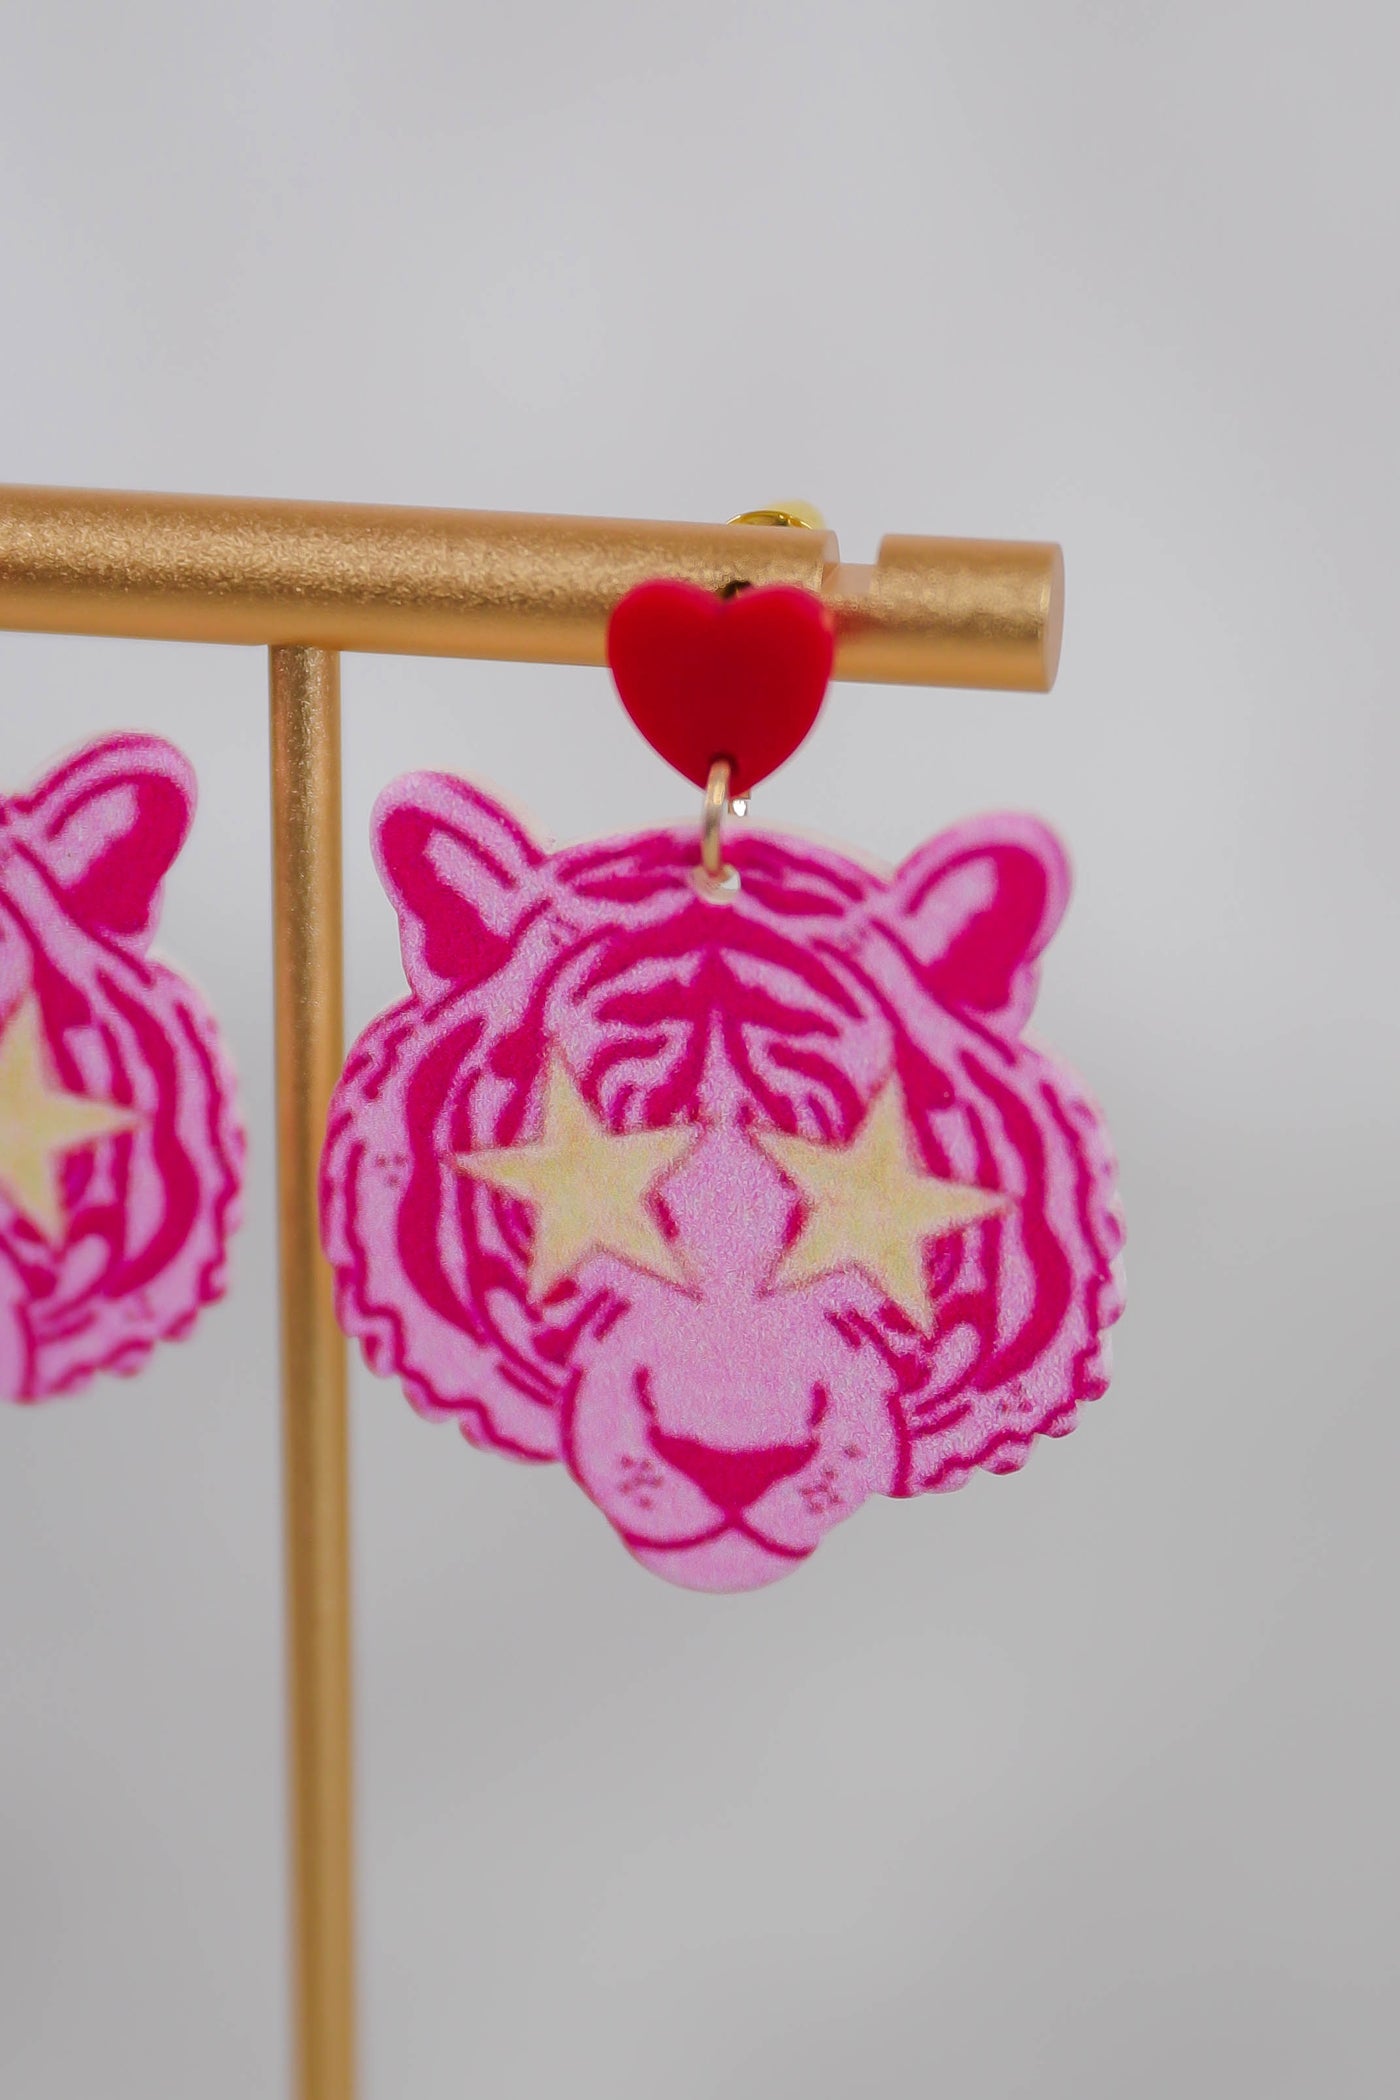 Fun Tiger Earrings- Hot Pink Statement Earrings